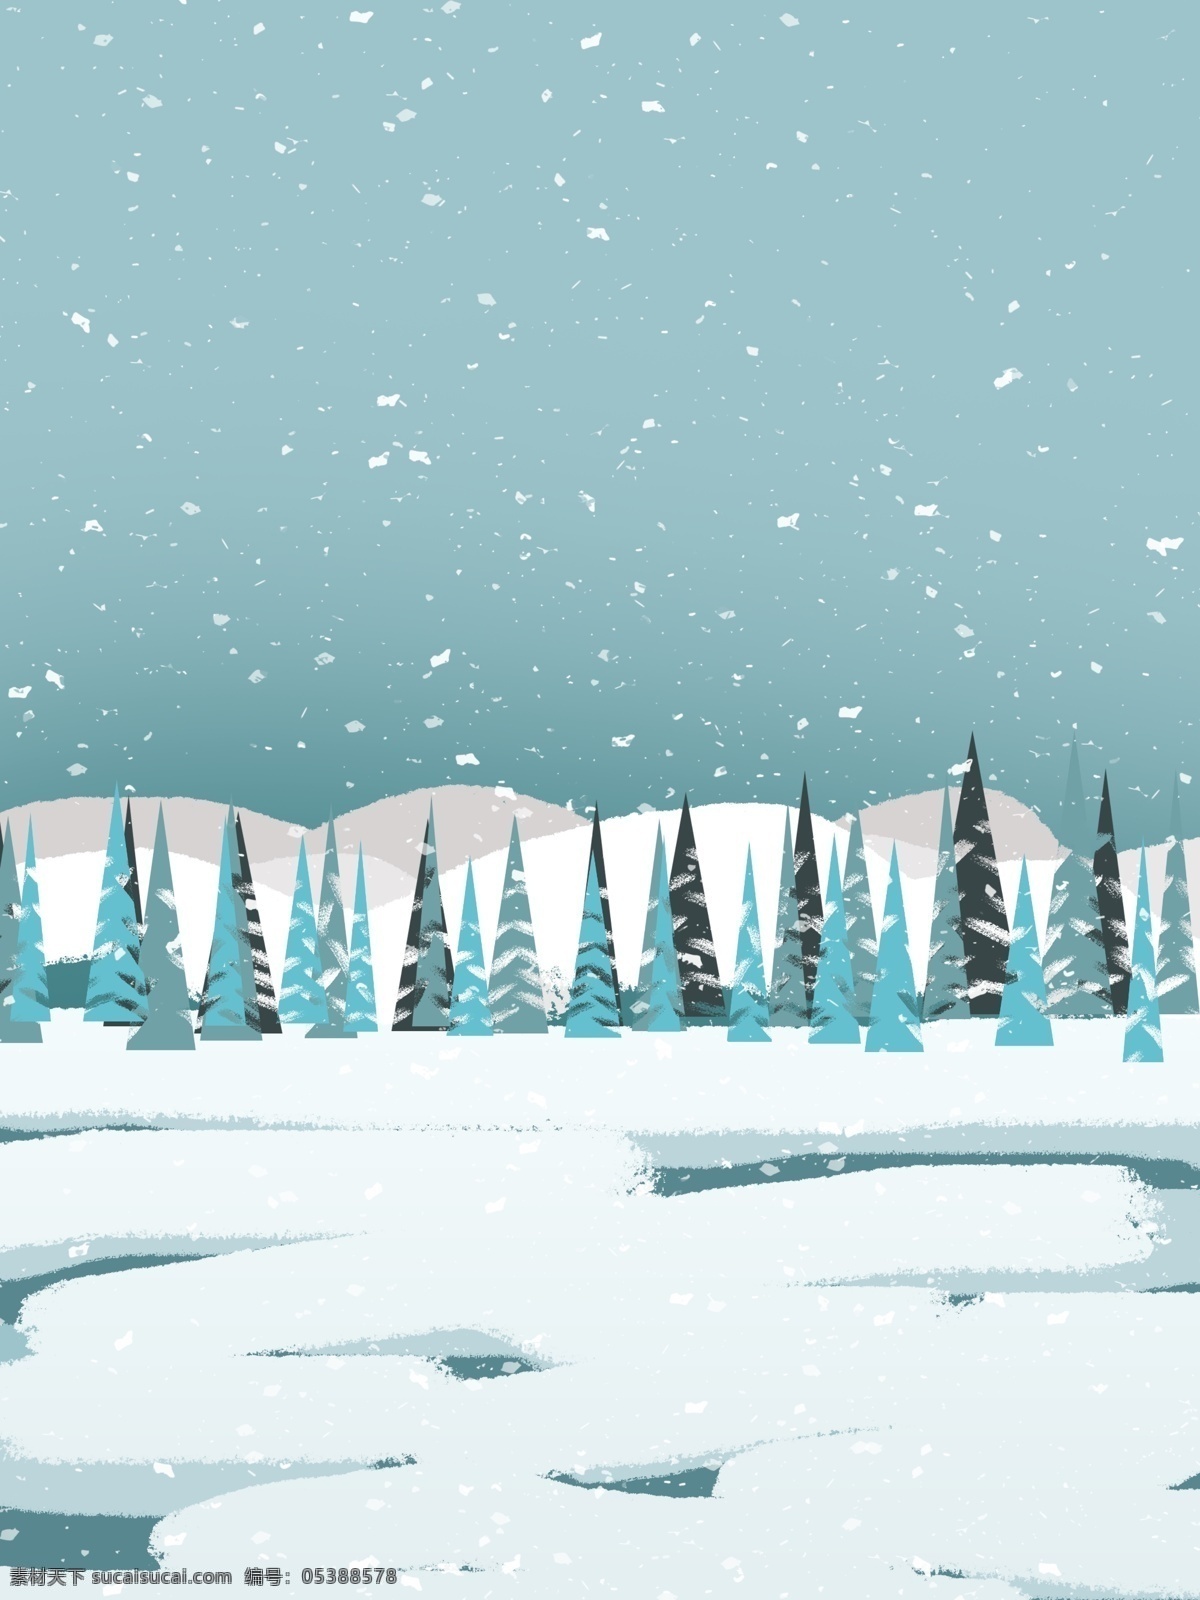 蓝色 简约 小雪 节气 风景 背景 水彩背景 大雪 下雪 雪花 背景设计 雪地风景 大雪背景 冬至